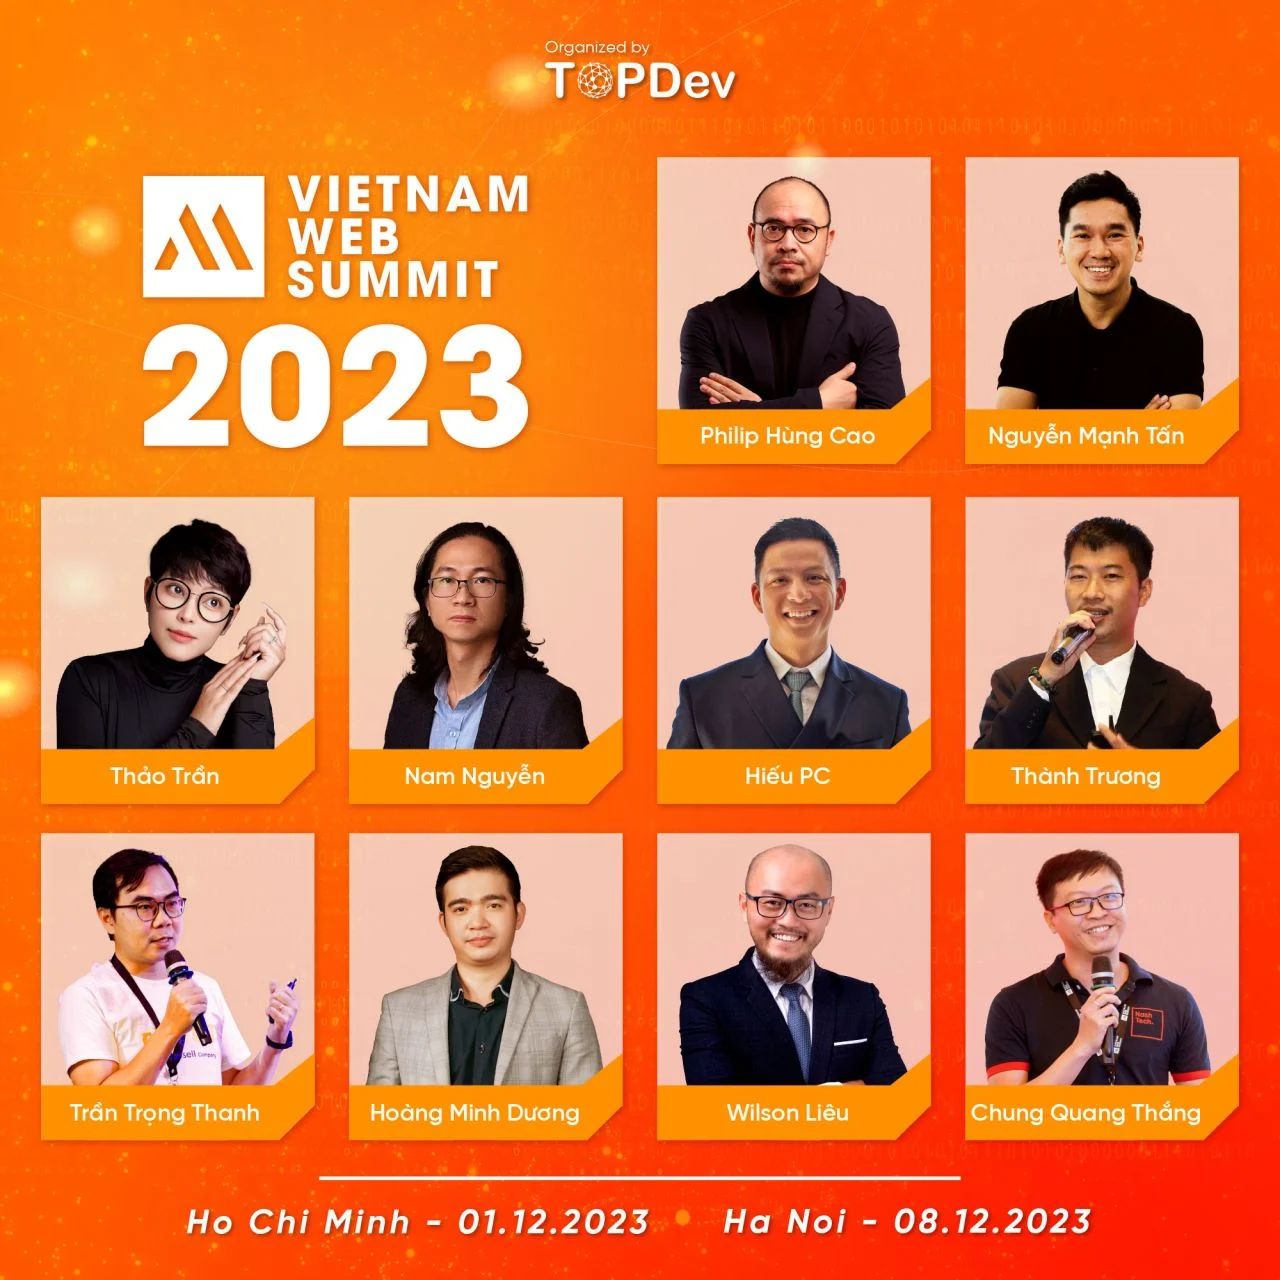 Vietnam Web Summit 2023 